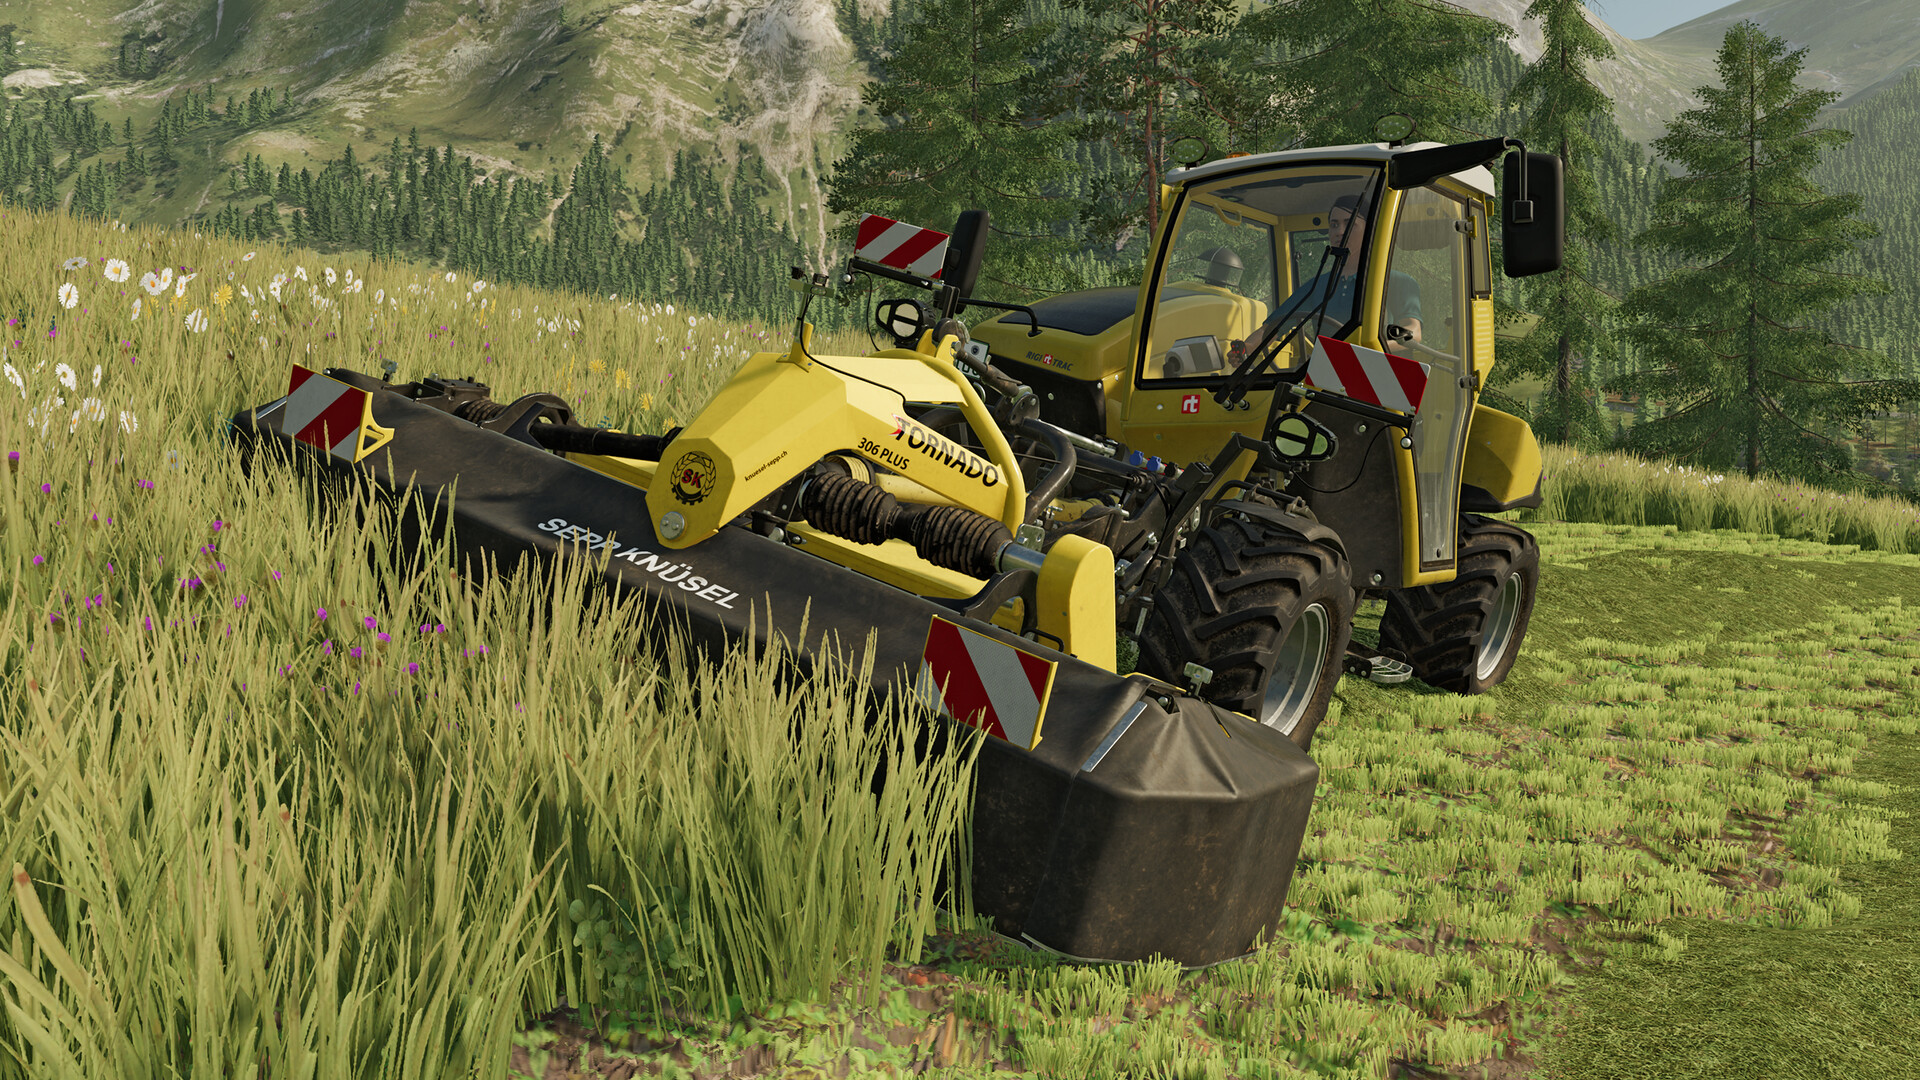 Farming Simulator 22 - Premium Expansion on Steam